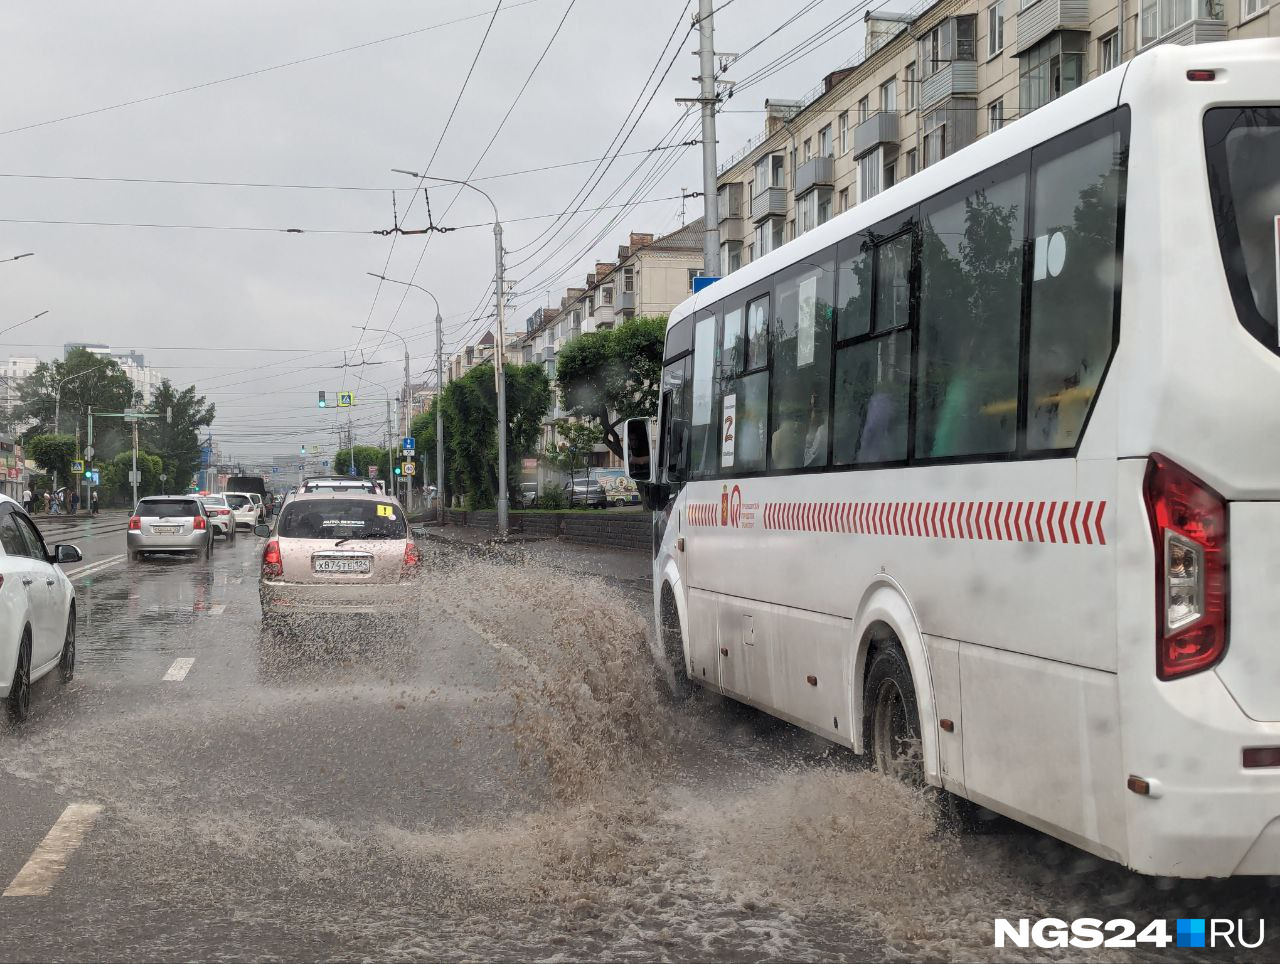 Красноярск заливает, дороги превратились в реки. Когда закончится дождь?